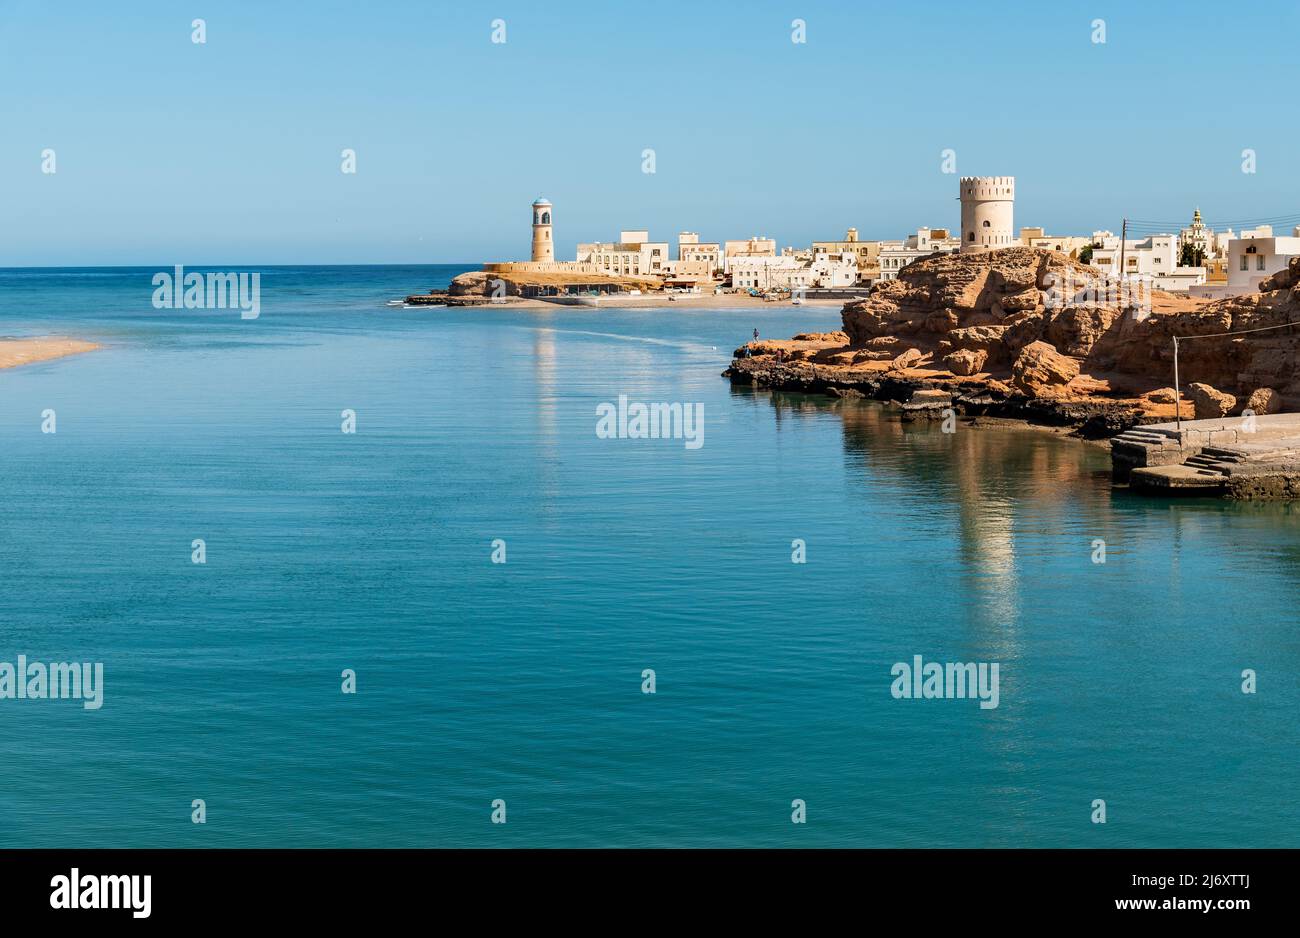 Paysage de la baie de sur avec le phare d'Al Ayjah et le fort sur le rocher, Sultanat d'Oman au Moyen-Orient. Banque D'Images